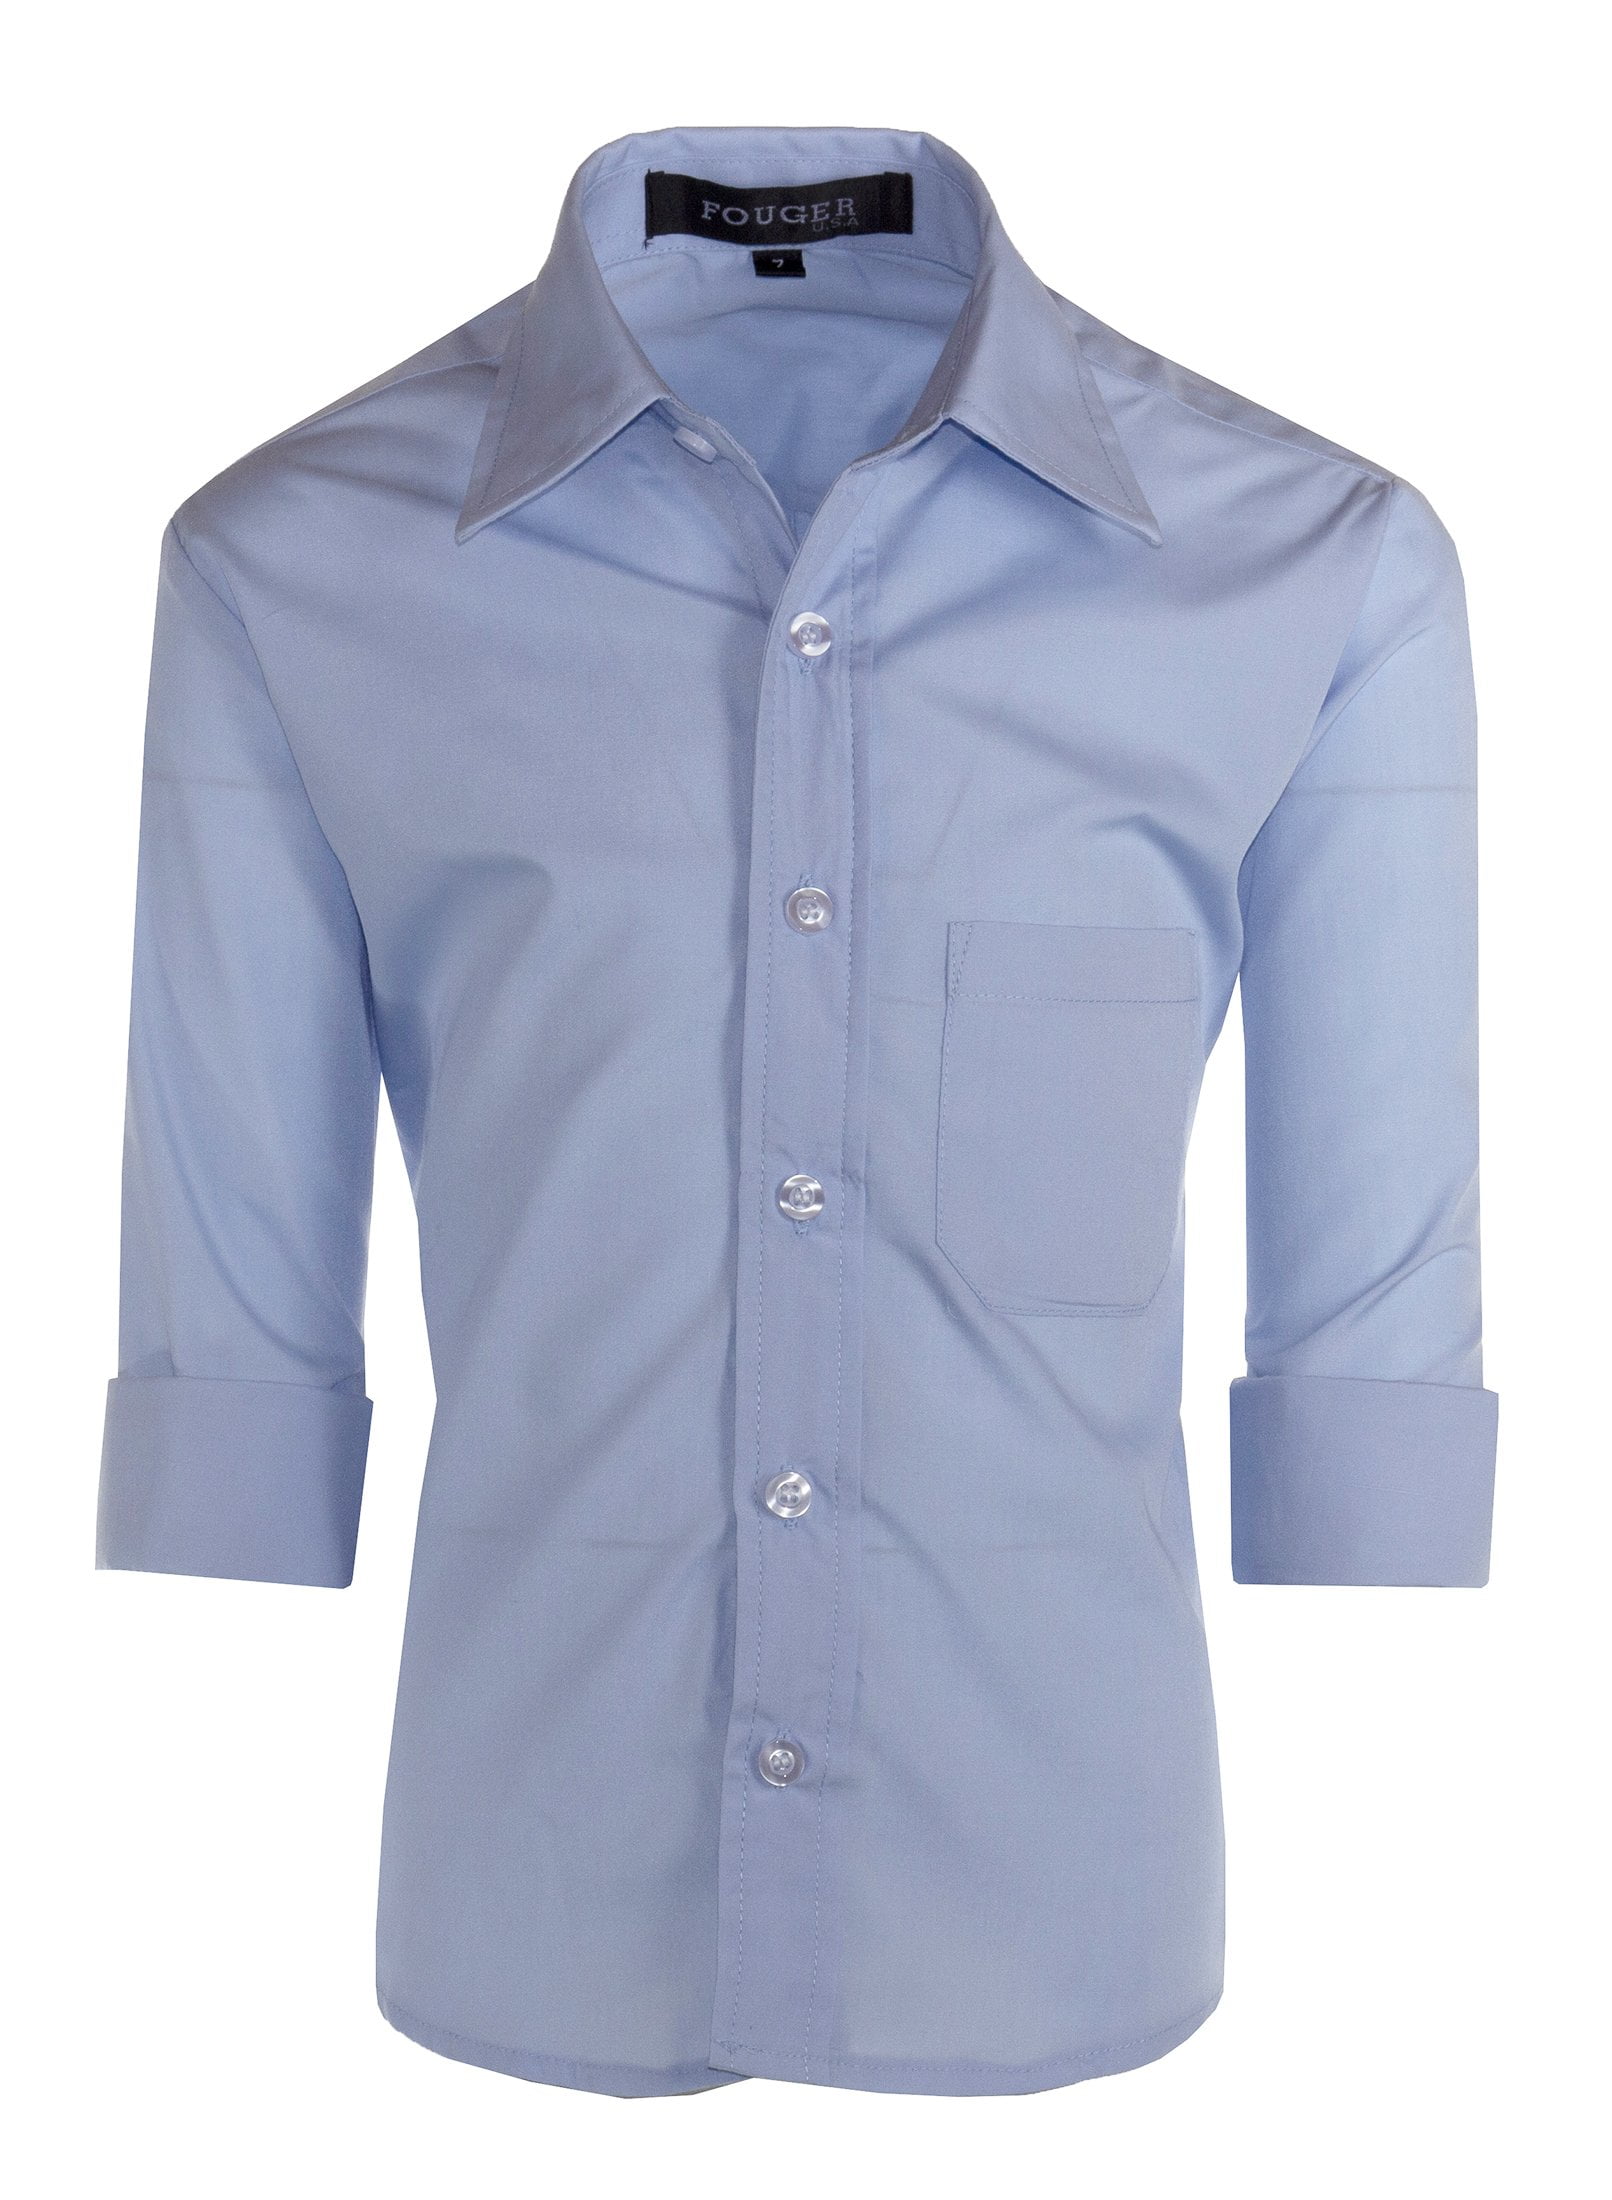 Fouger - Boys Slim Fit Long Sleeve Dress Shirt - Aiden - Walmart.com ...